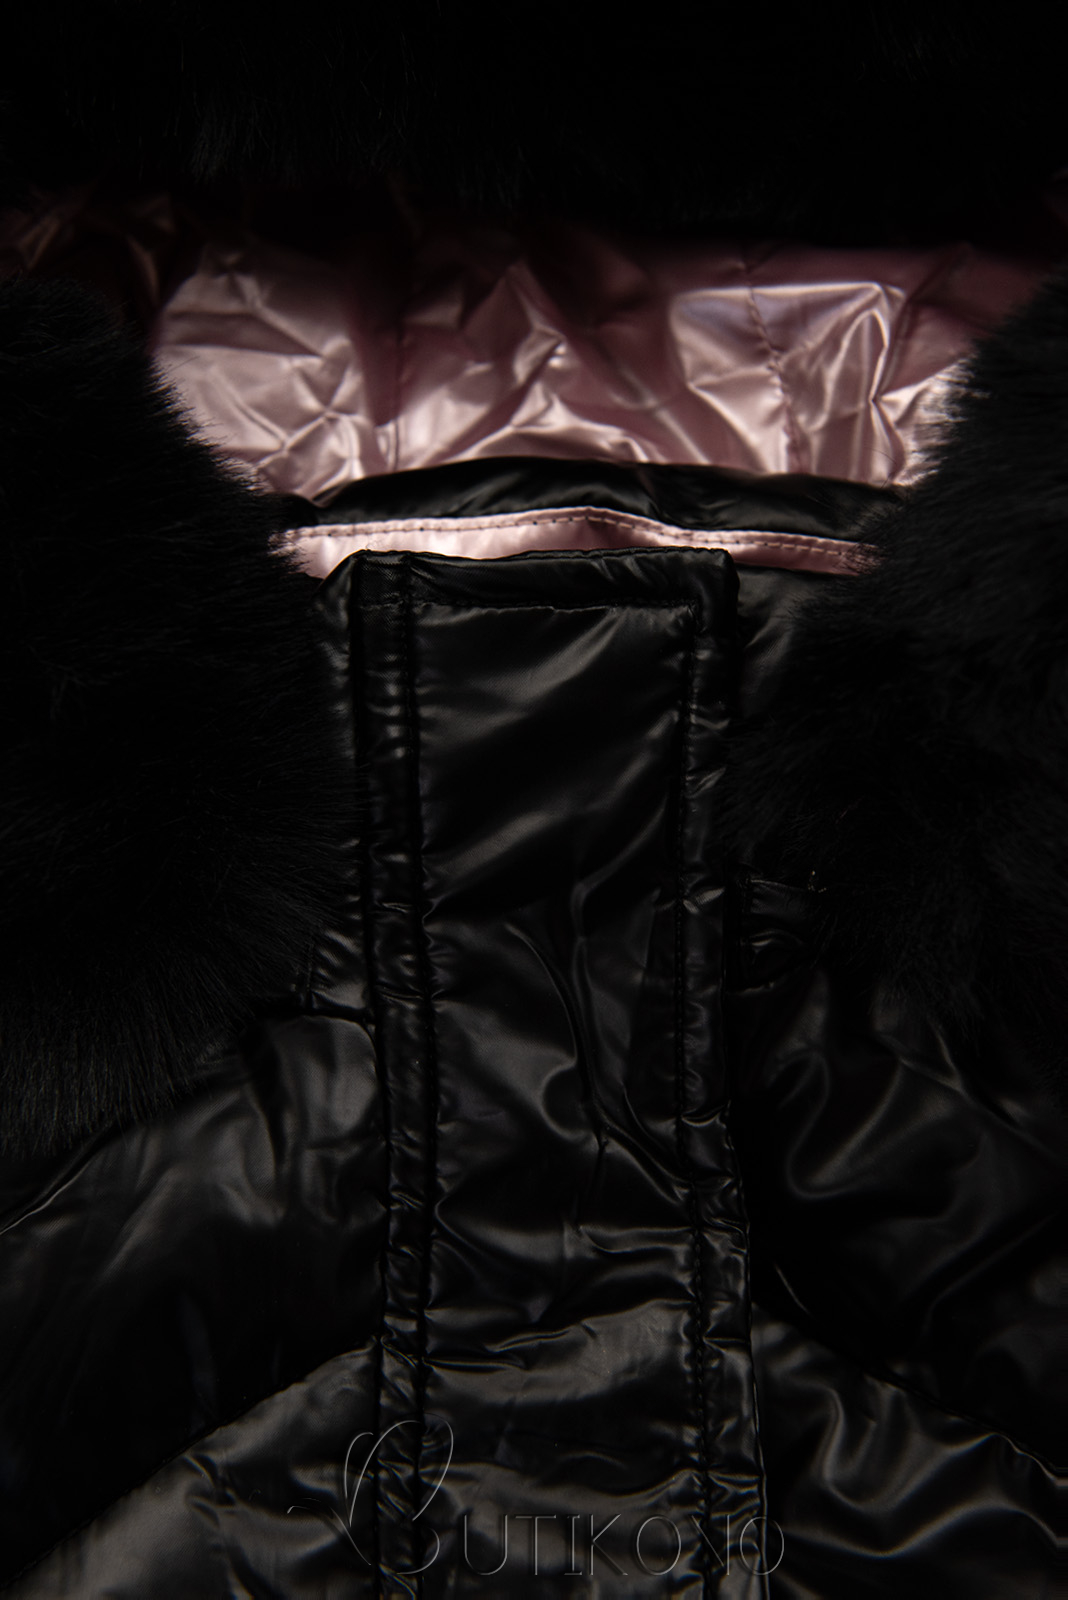 Černá dívčí lesklá zimní bunda